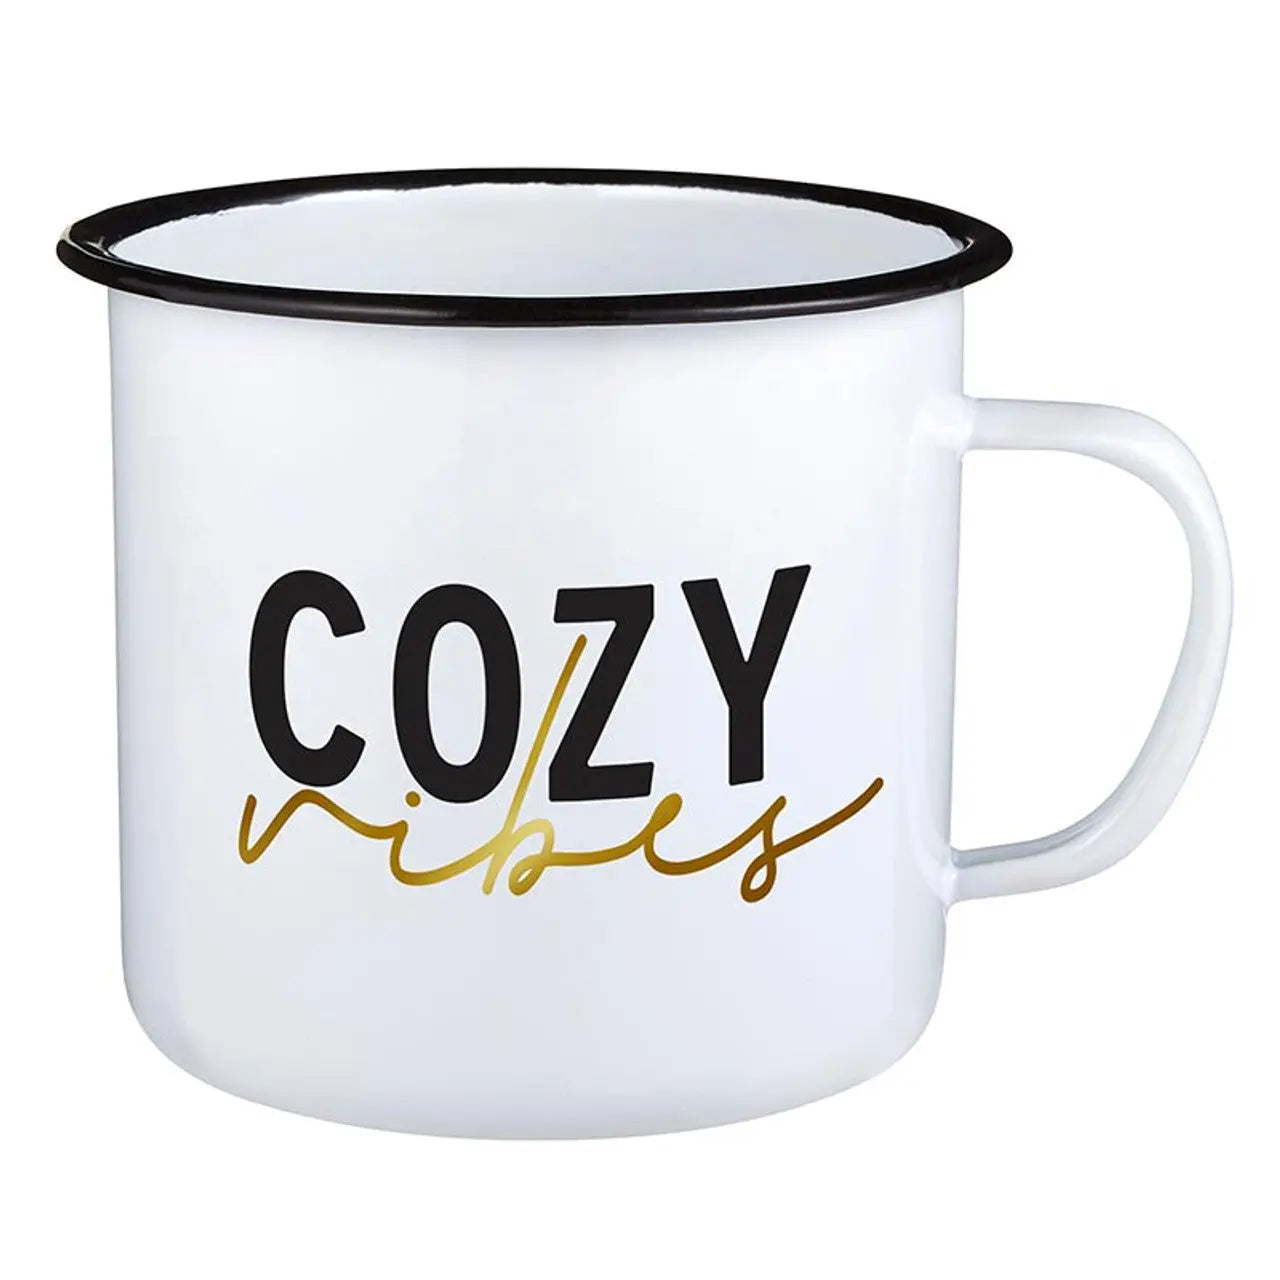 Cozy Vibes Mug - 24oz Mug – The Gifted Basket